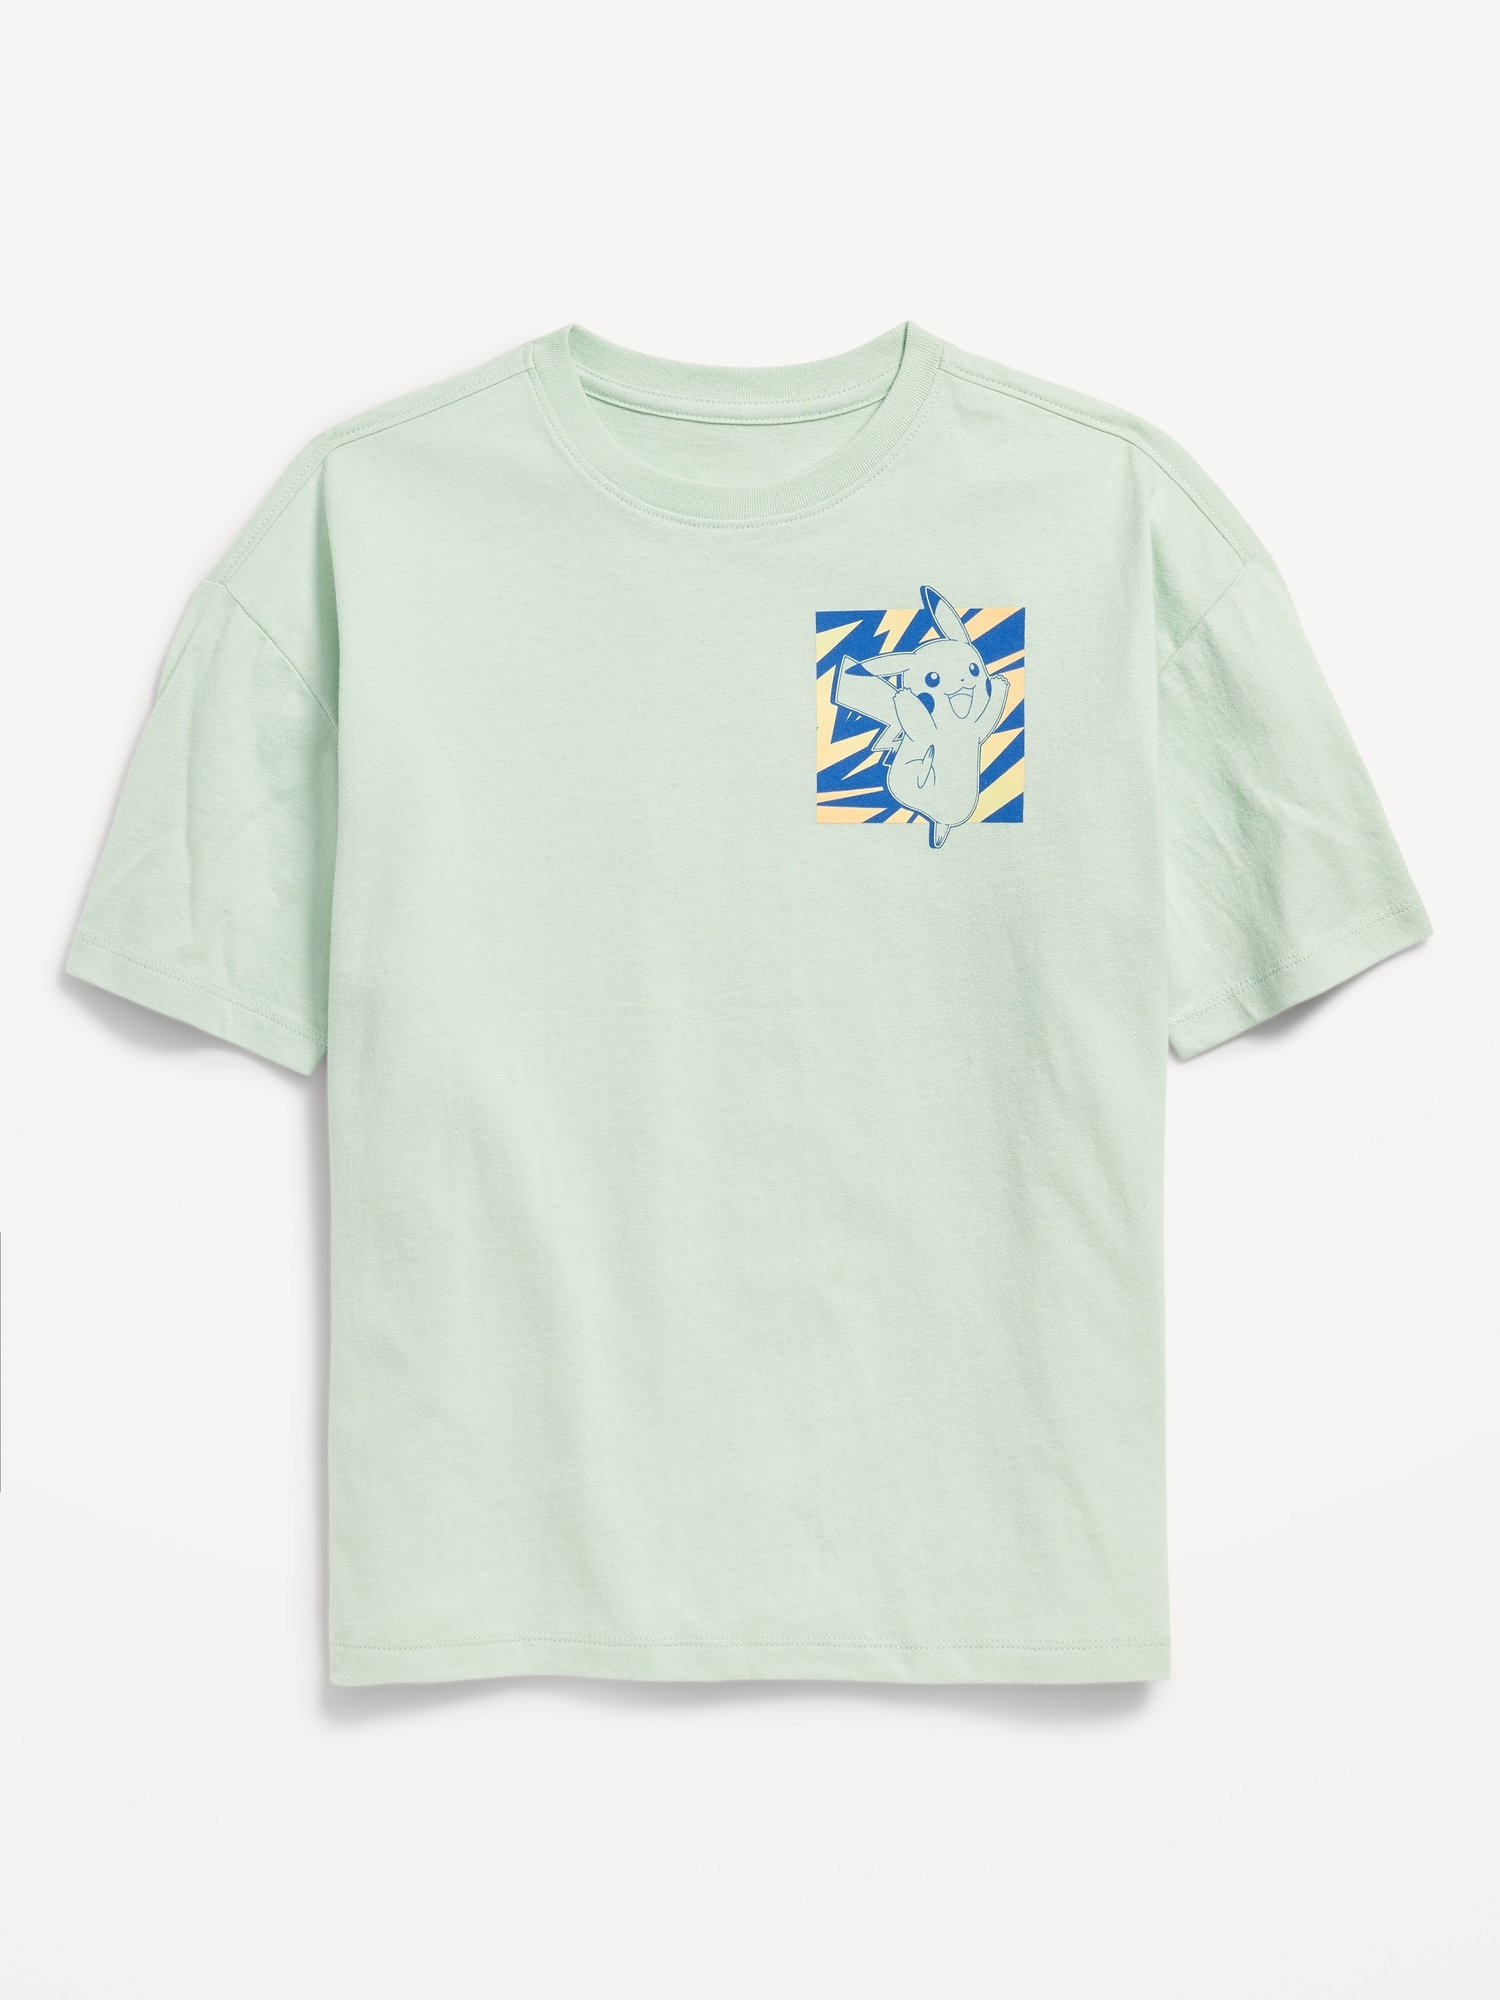 Pokemon Oversized Gender-Neutral Graphic T-Shirt for Kids